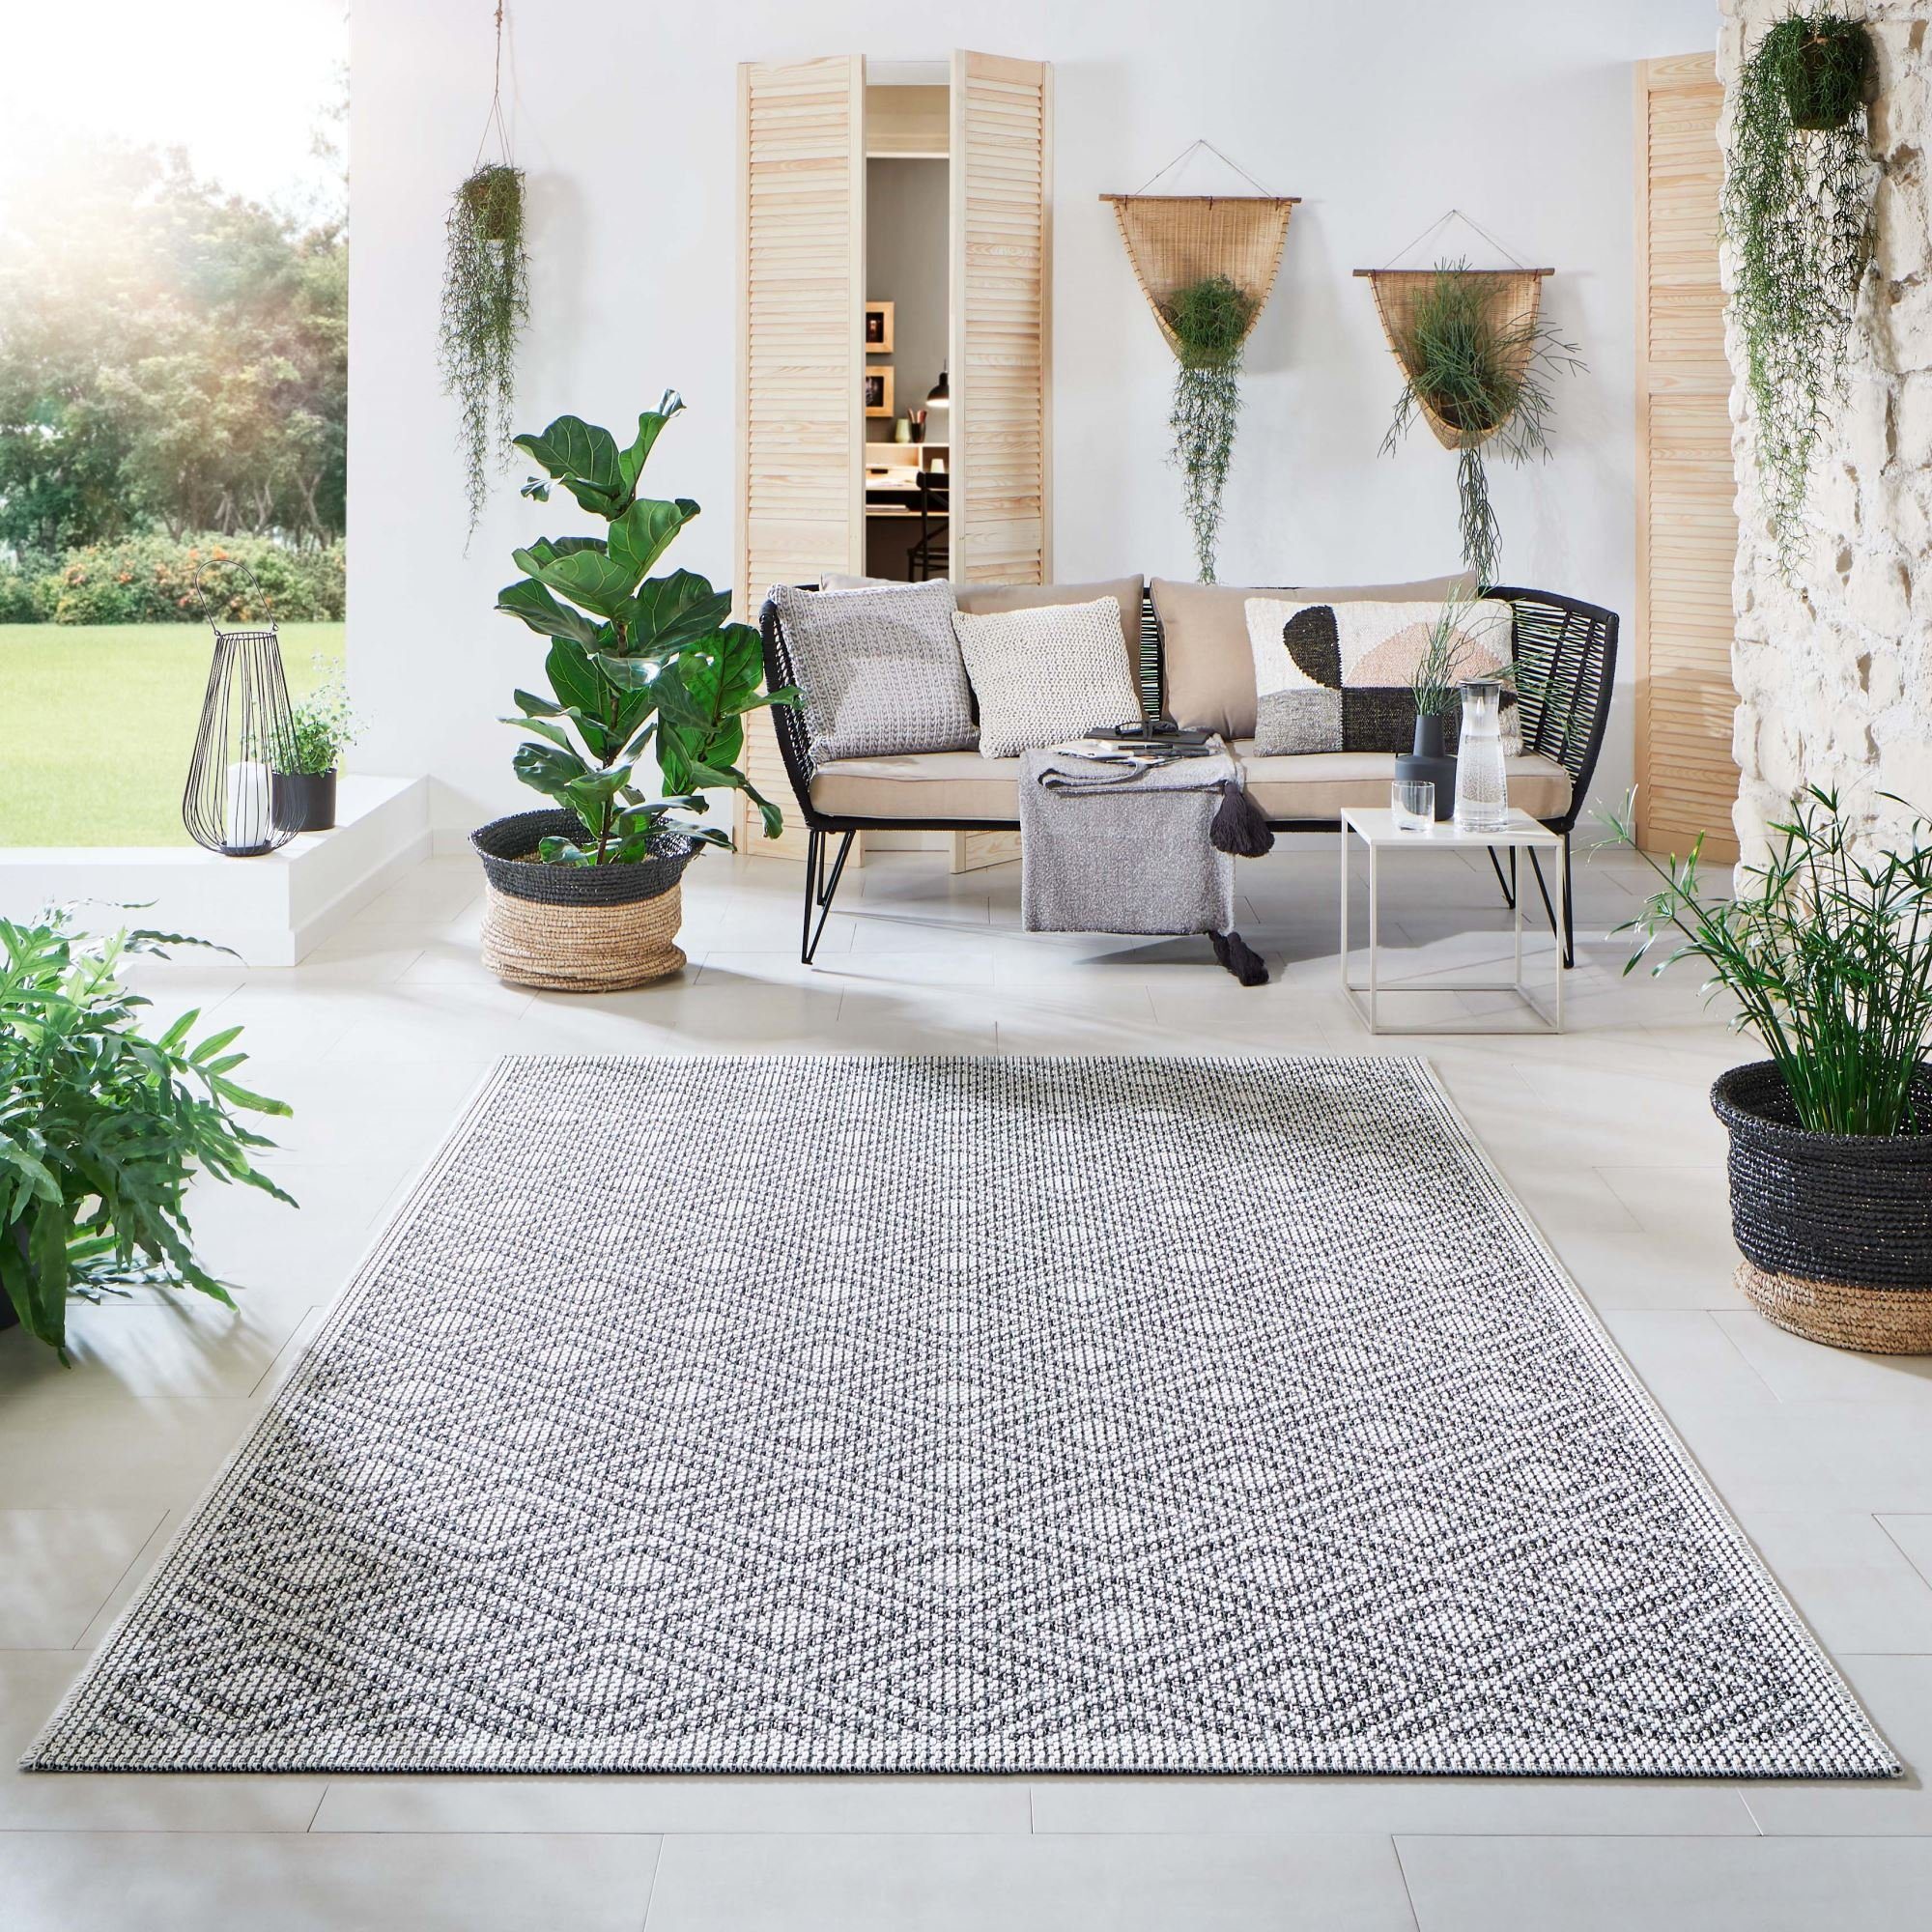 Outdoor-Teppich & Außenteppich online kaufen | OTTO